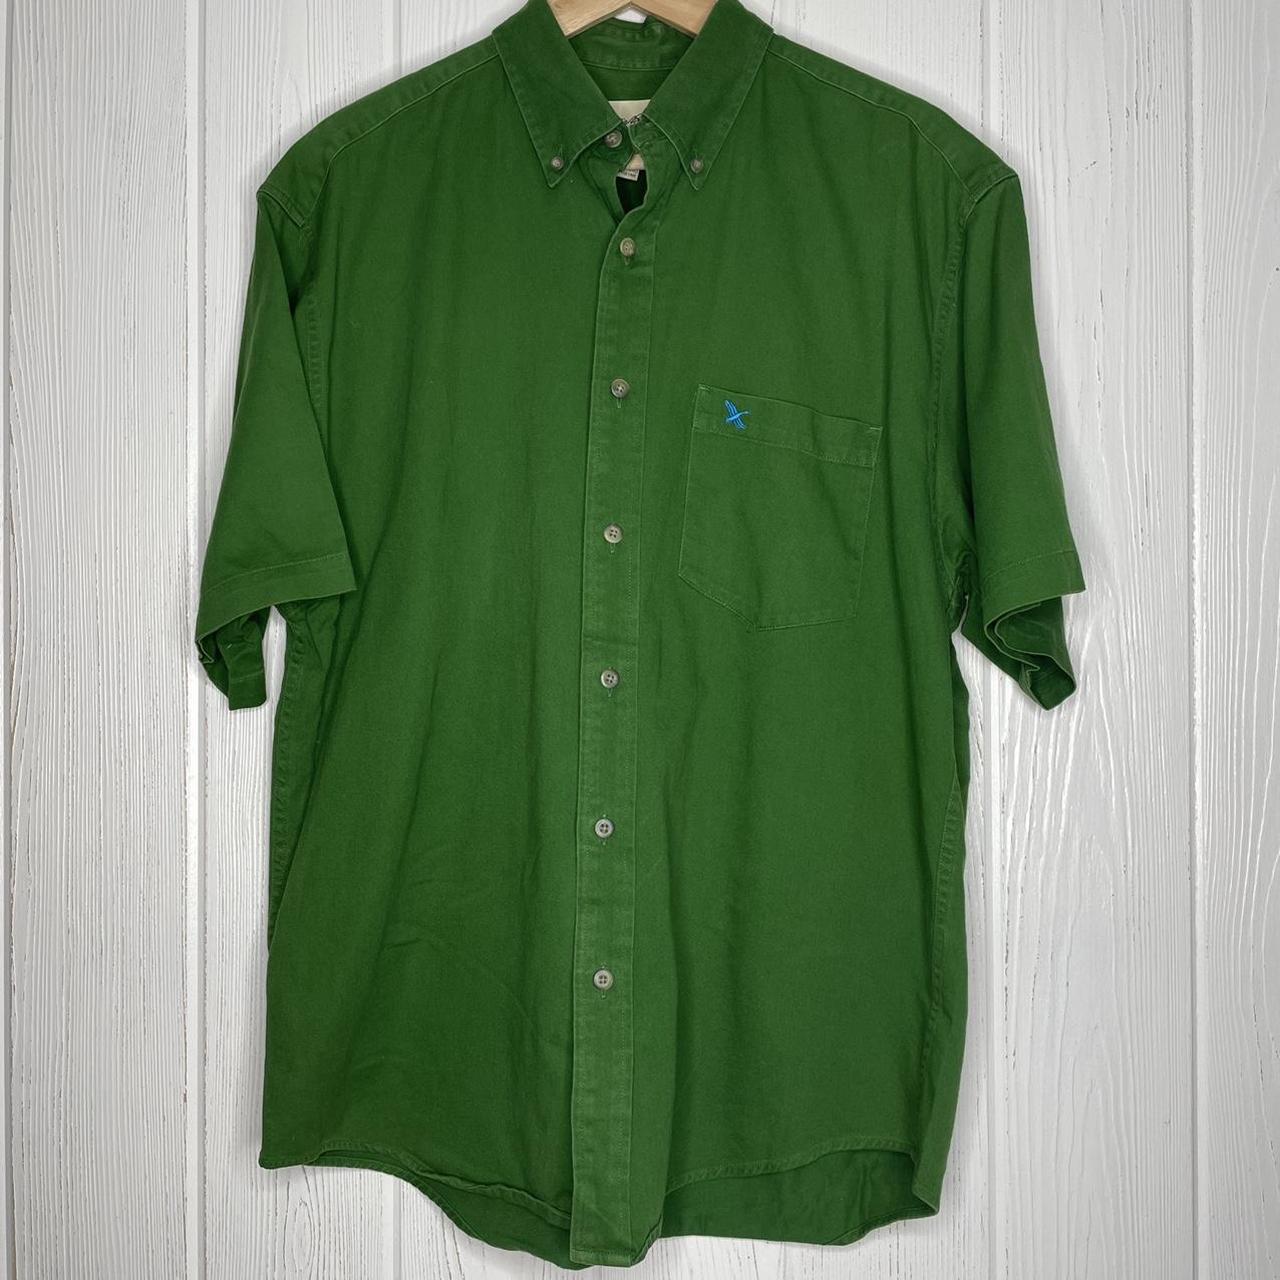 Vintage Eddie Bauer Green Button Down Shirt Medium... - Depop